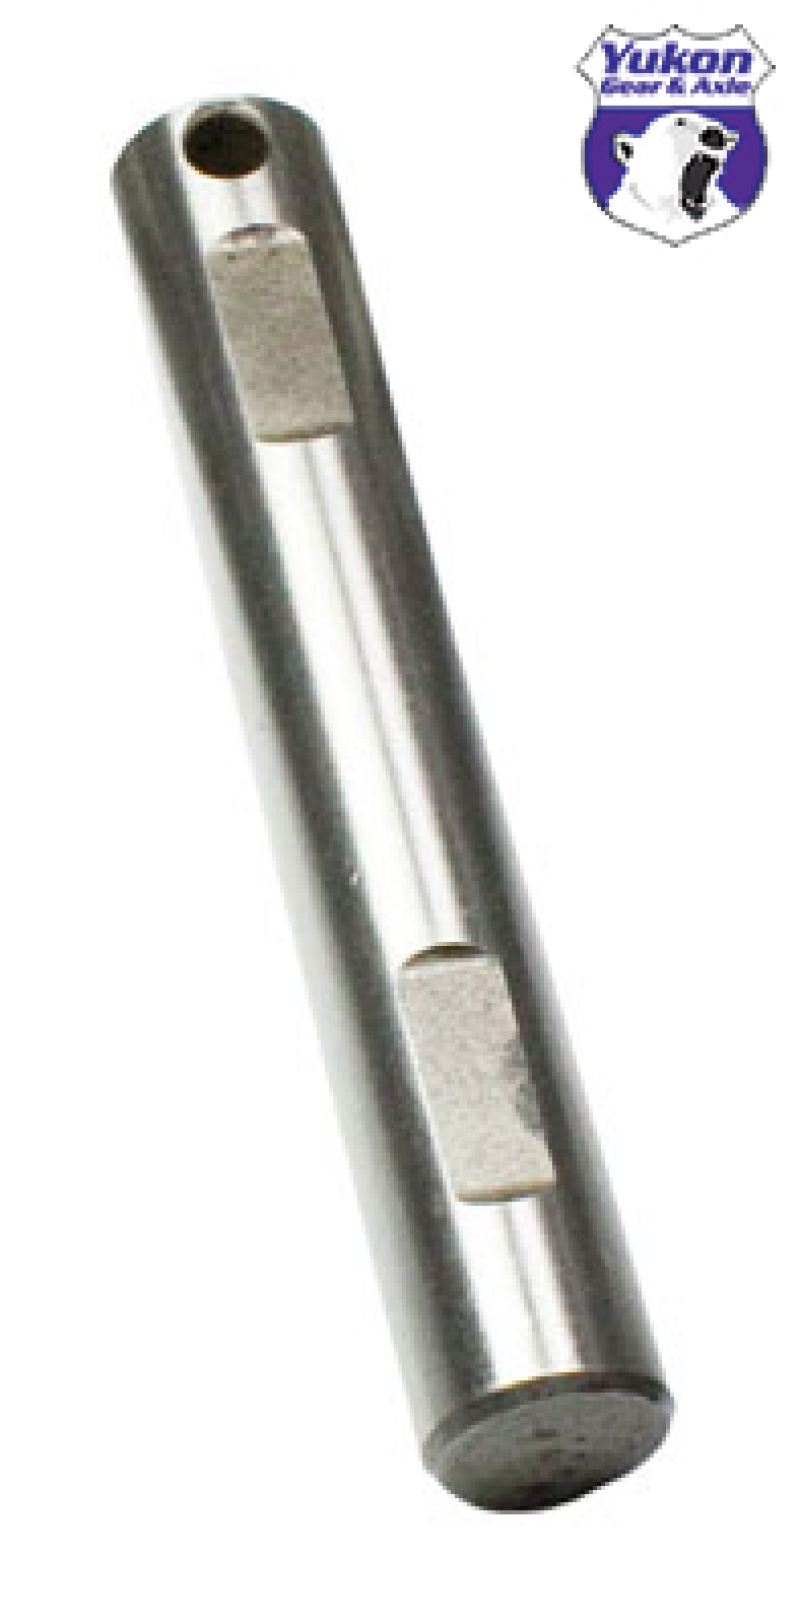 USA Standard Spartan Locker Replacement Cross Pin For Dana 60 - SL XP-D60